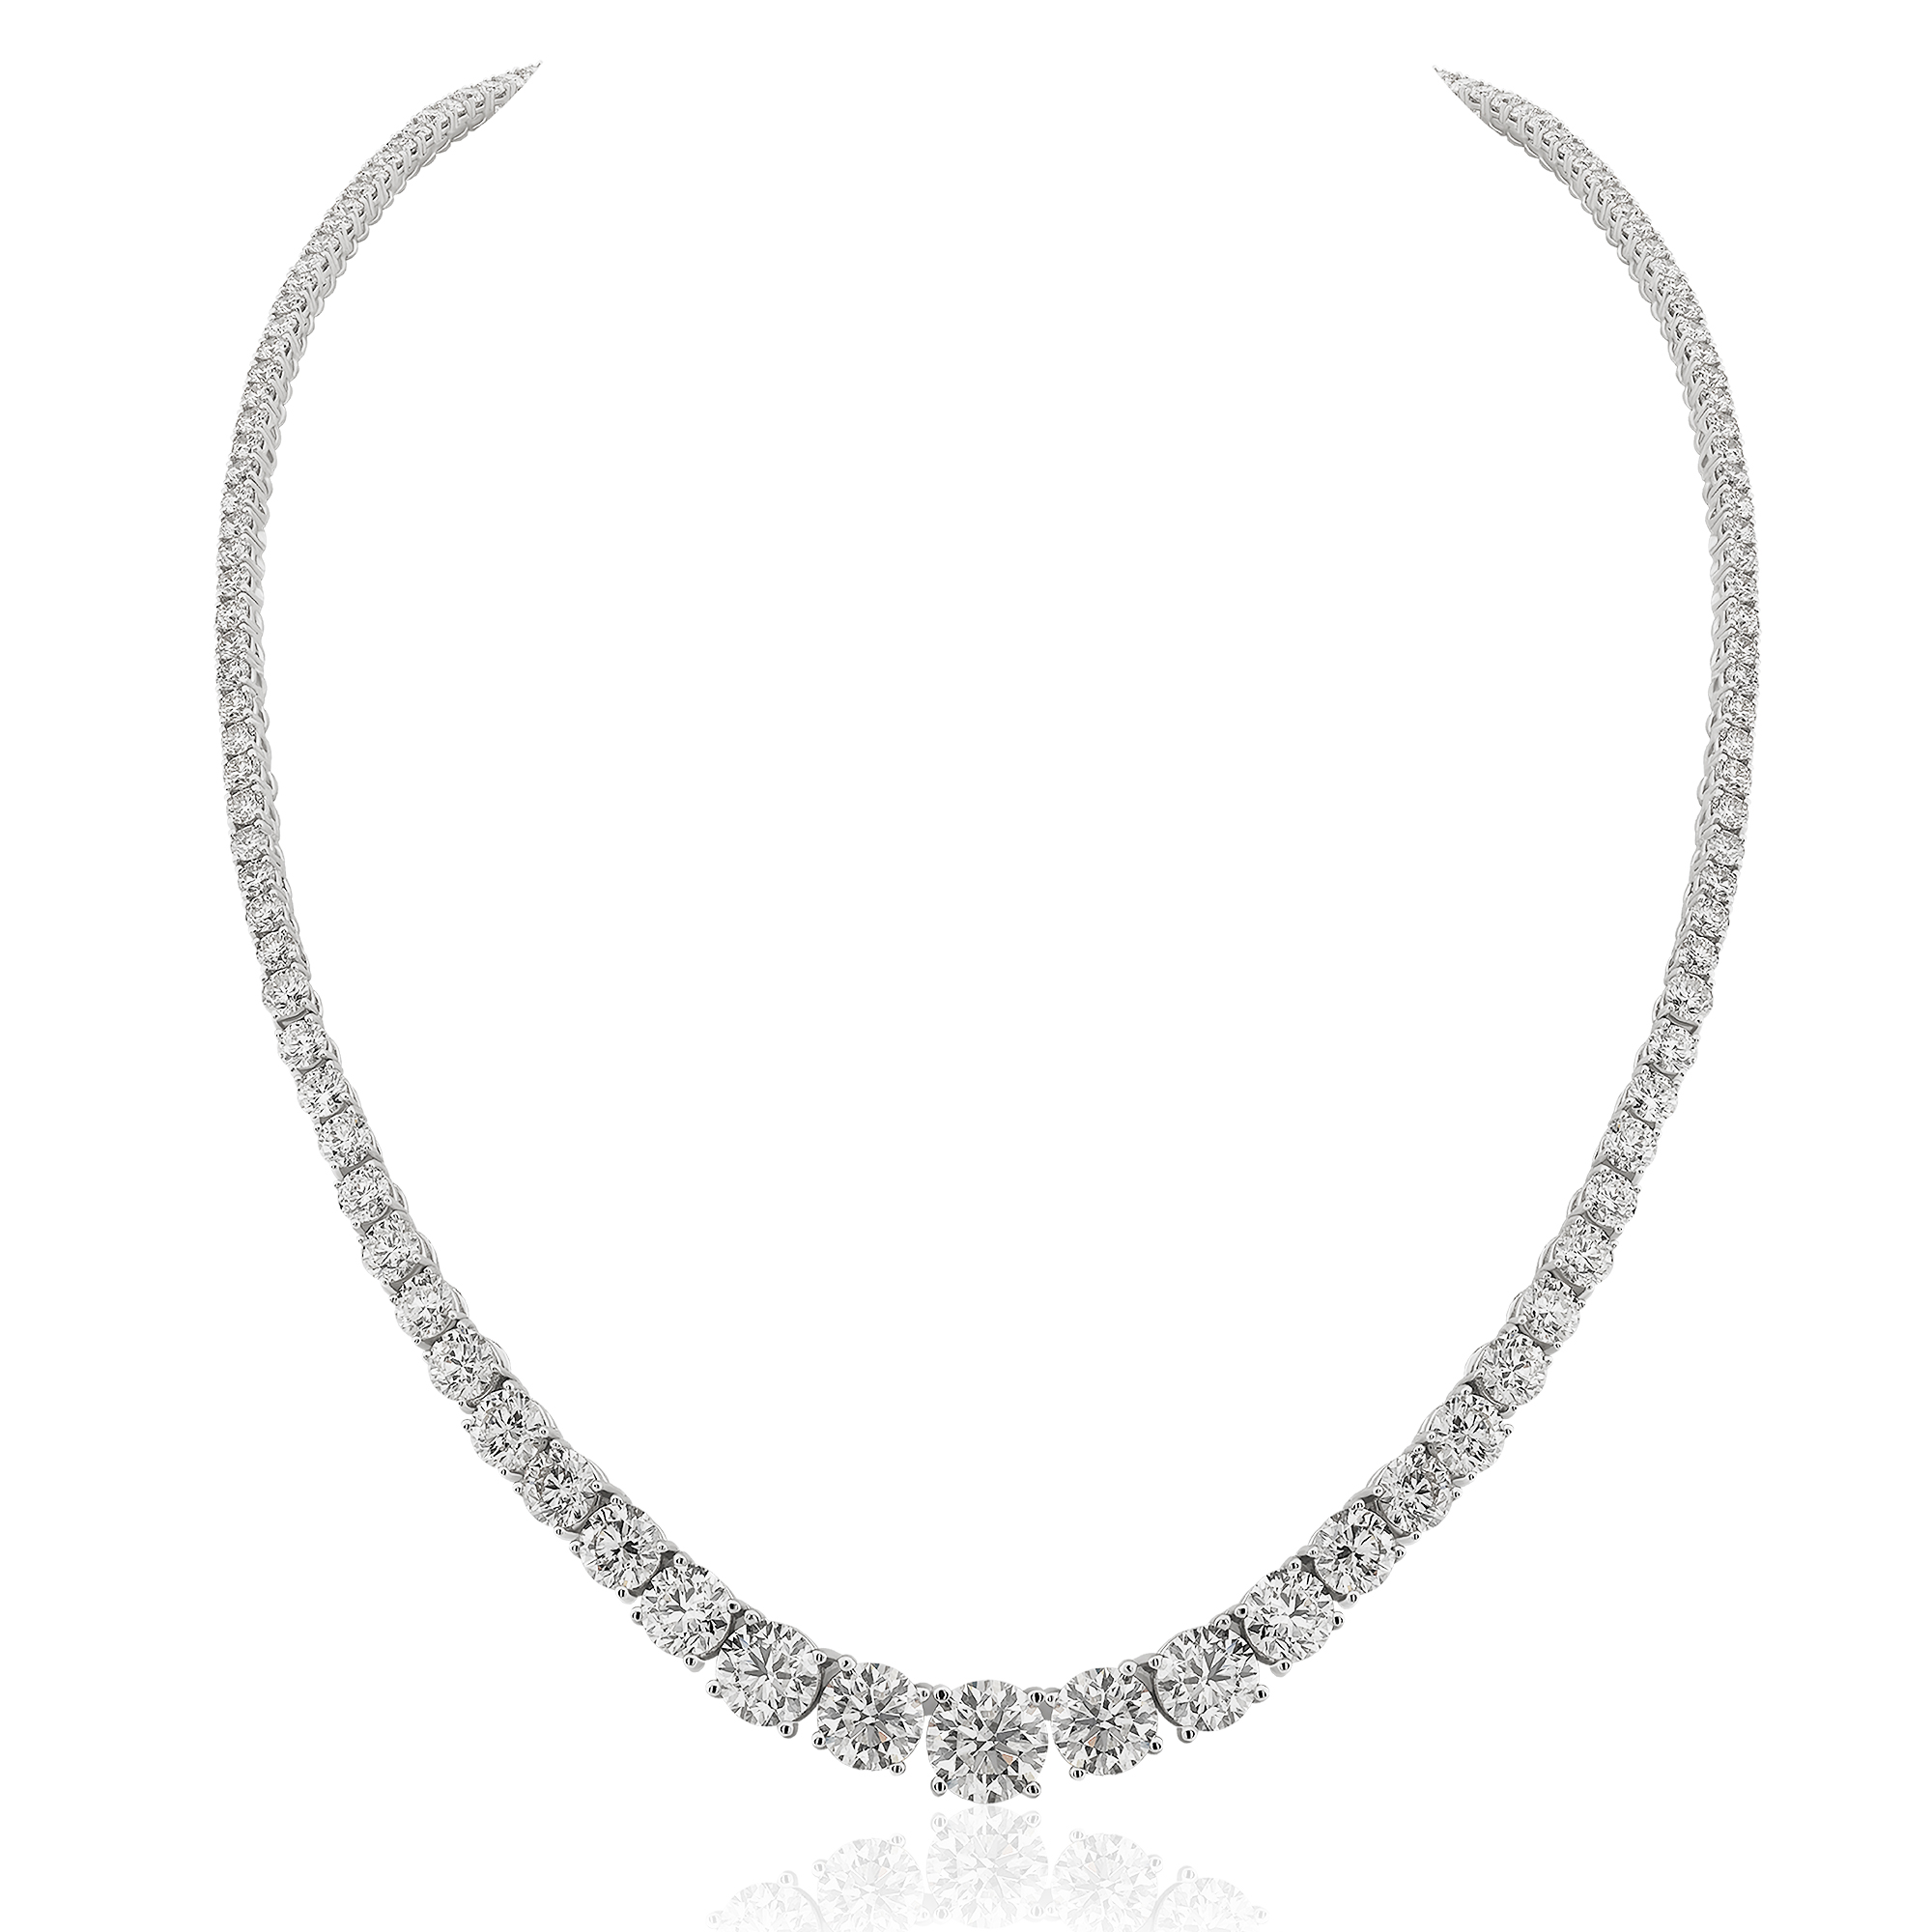 21,53 Ct. Diamond Riviera Necklace